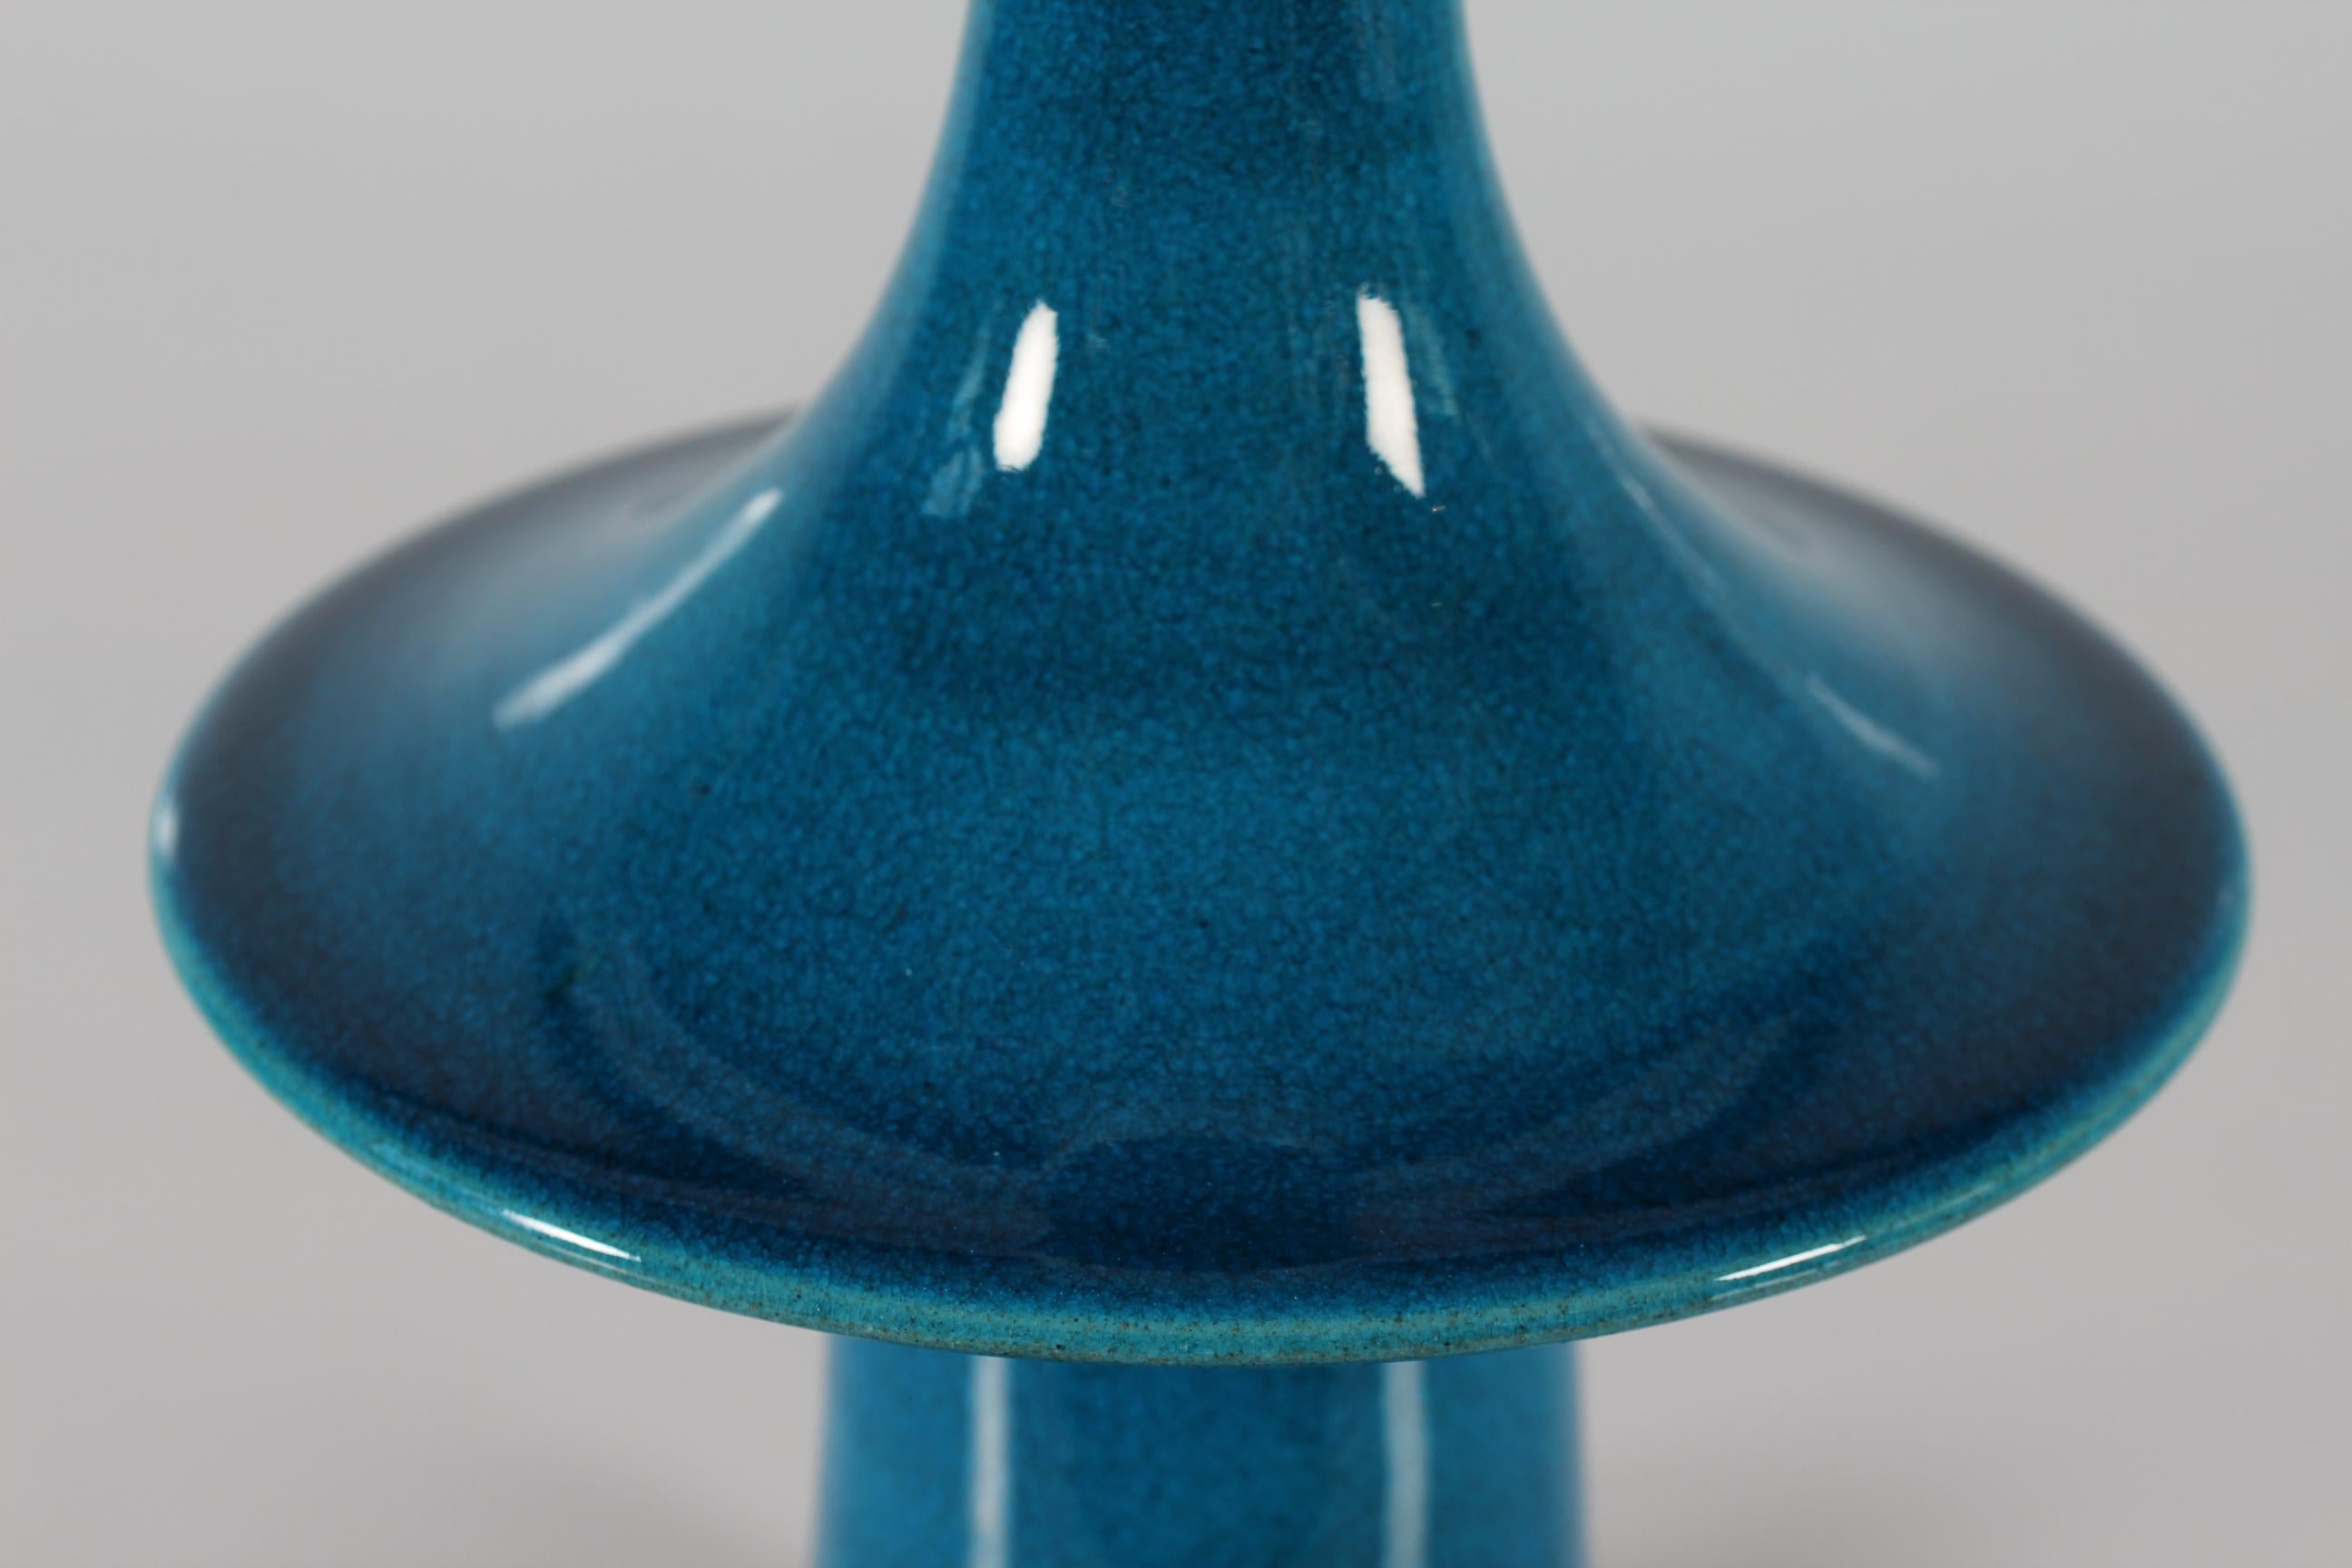 Mid-20th Century Danish Kähler + Poul Erik Eliasen Style Sculptural Table Lamp Turquoise Blue 60s For Sale